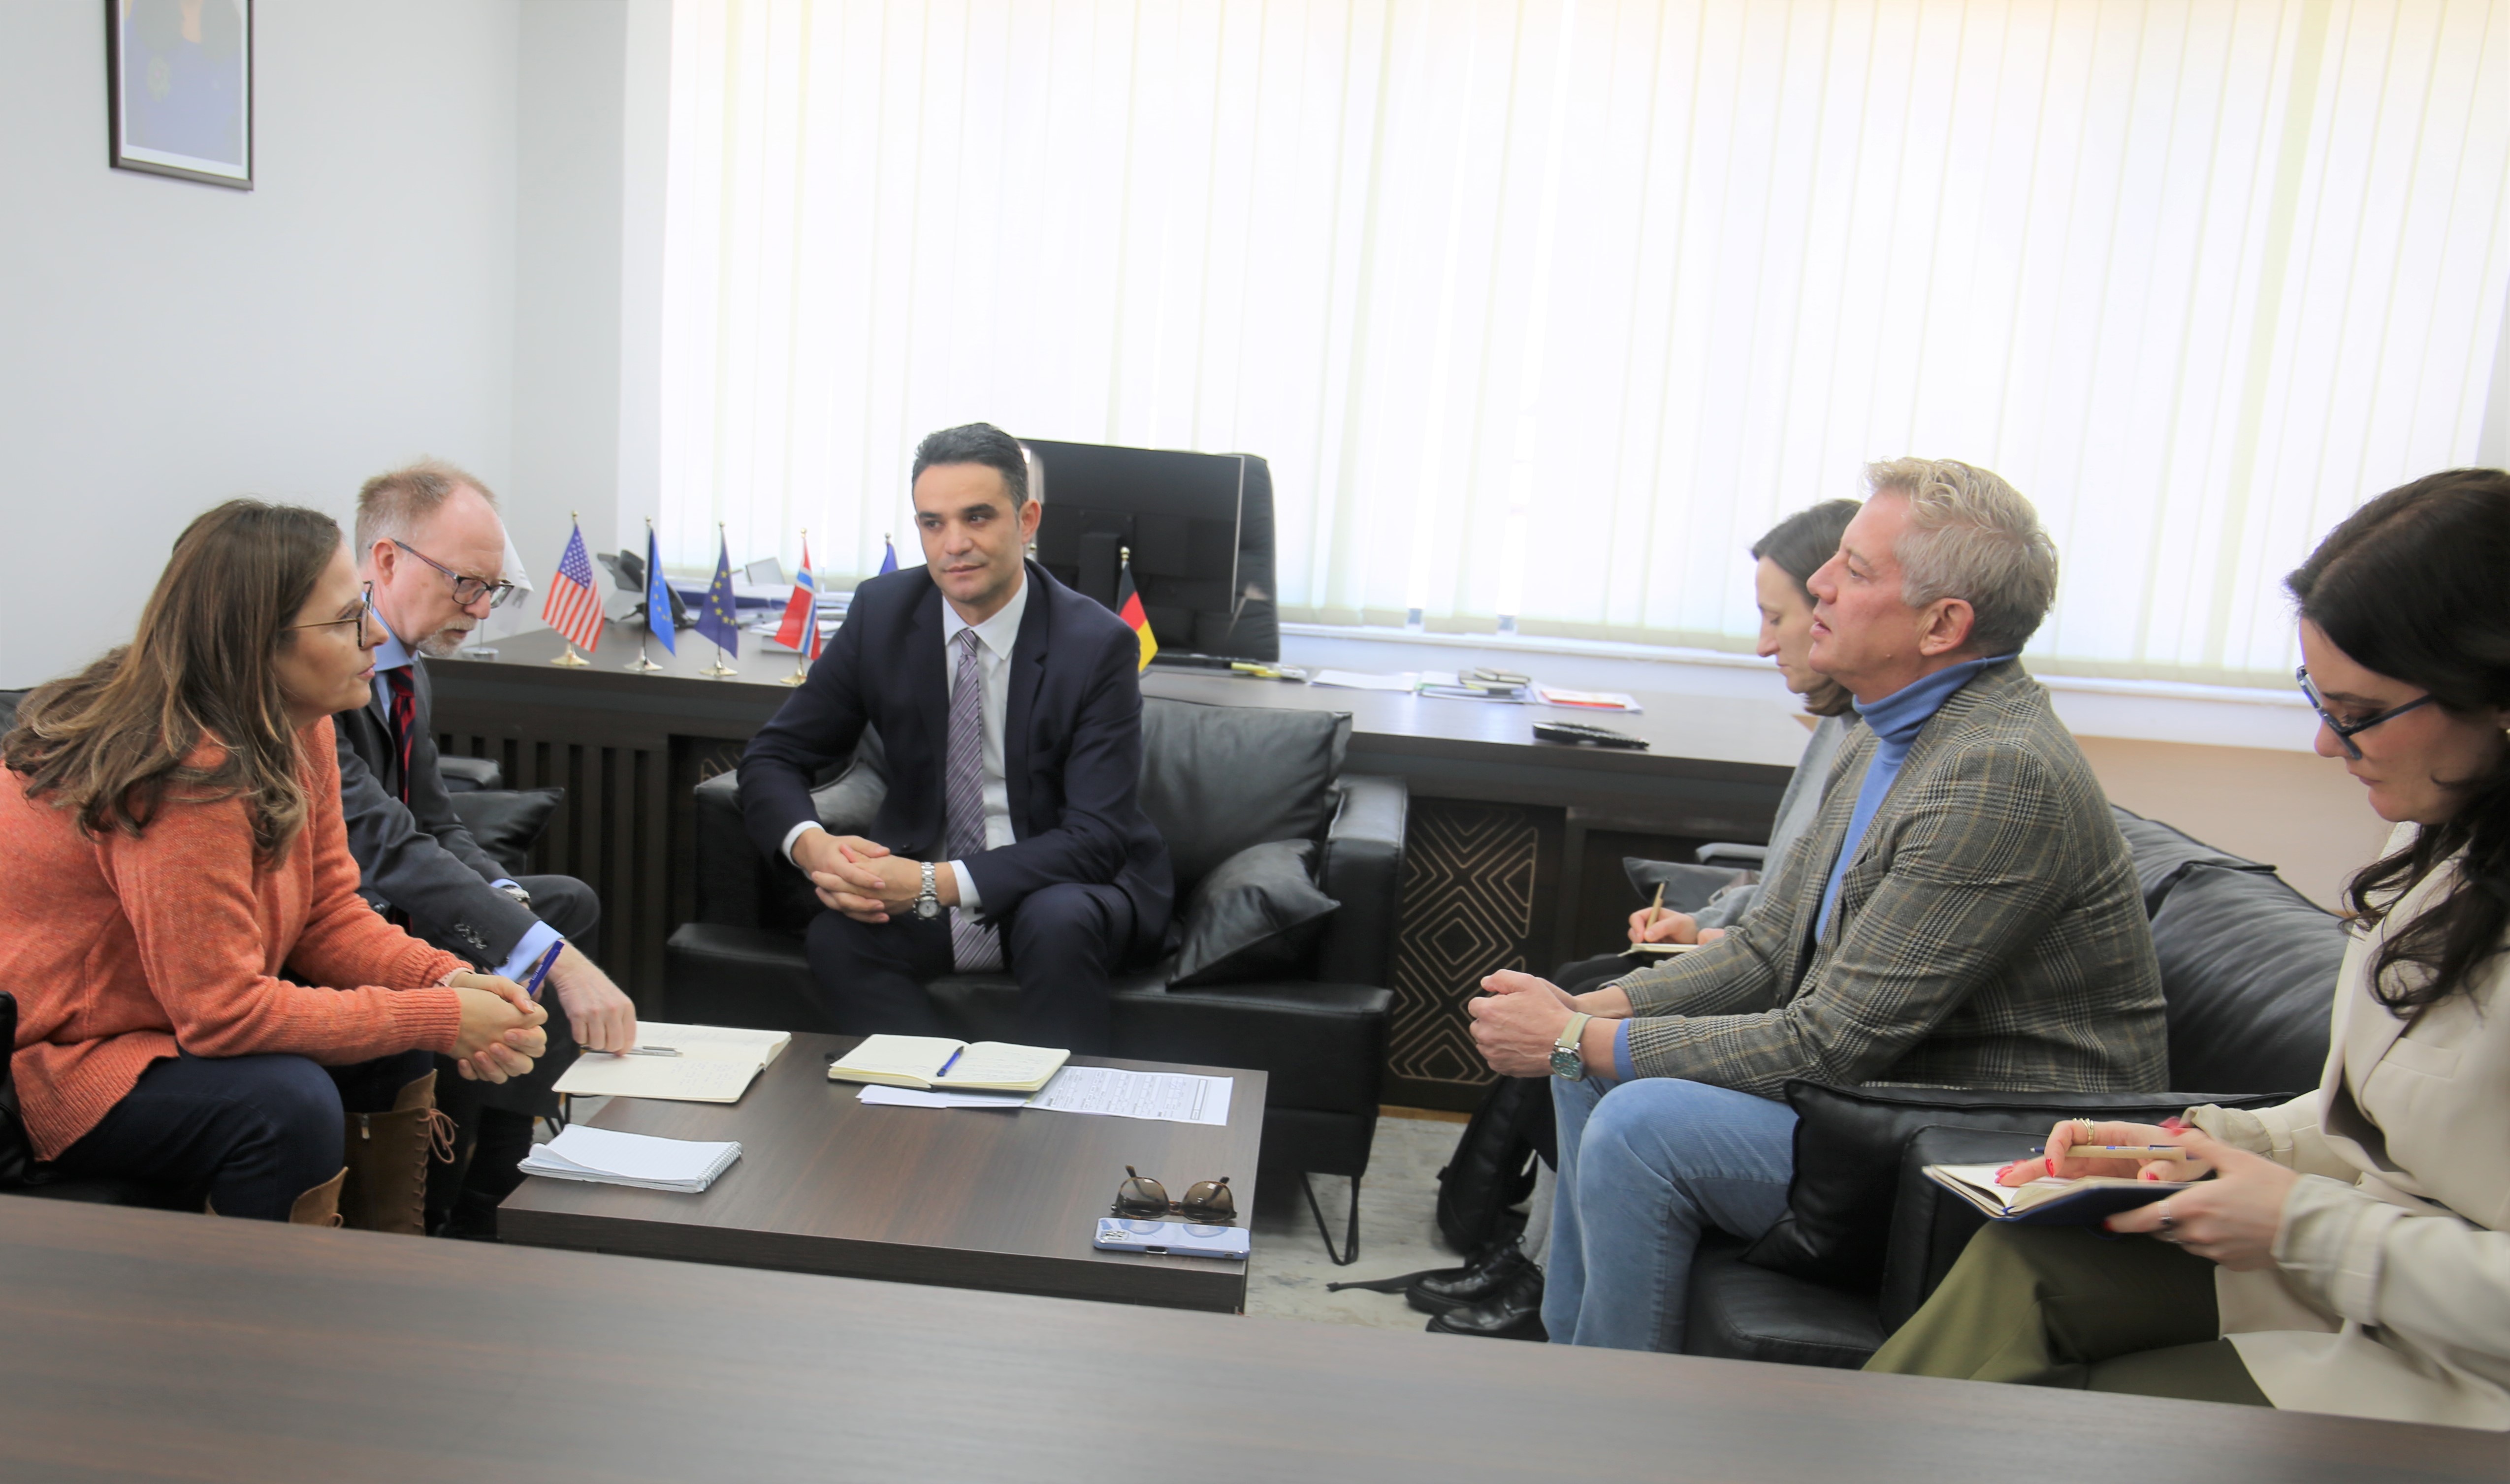 Drejtori i Përgjithshëm i Sekretariatit të KPK-së priti në një takim njohës përfaqësuesit e Zyrës së BE-së në Kosovë